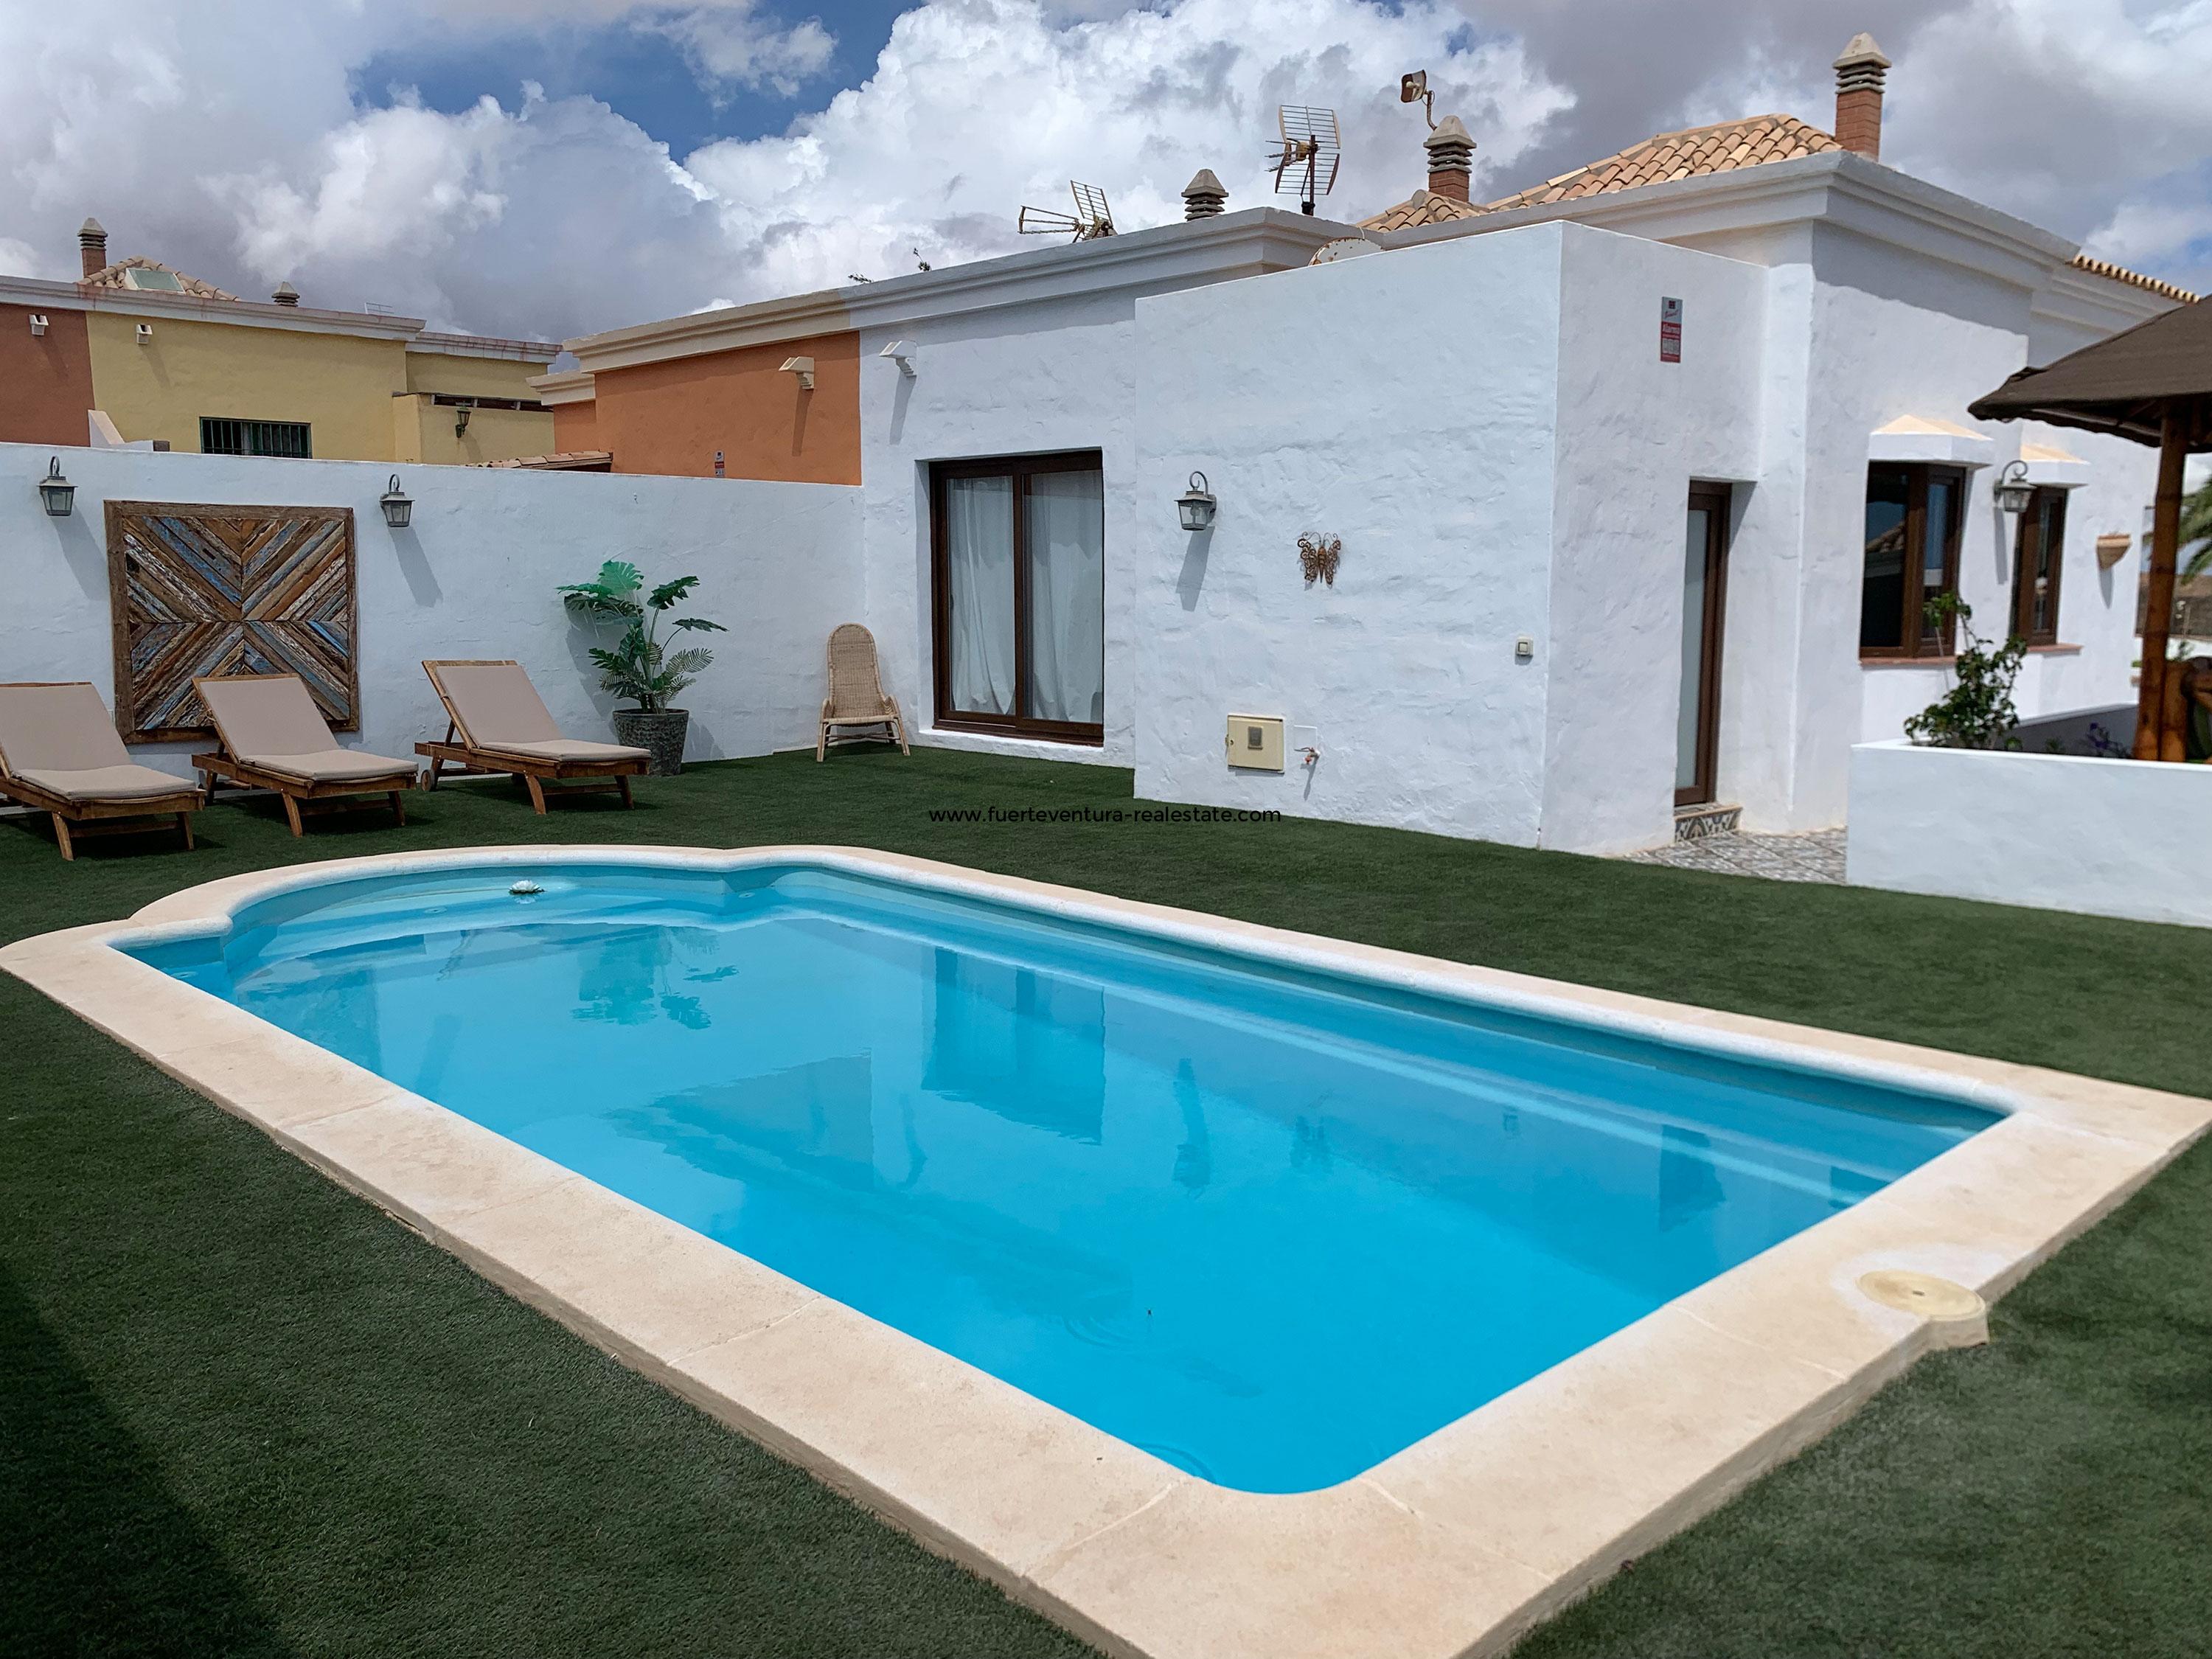  Bella casa con piscina in una buona posizione a Caleta de Fuste